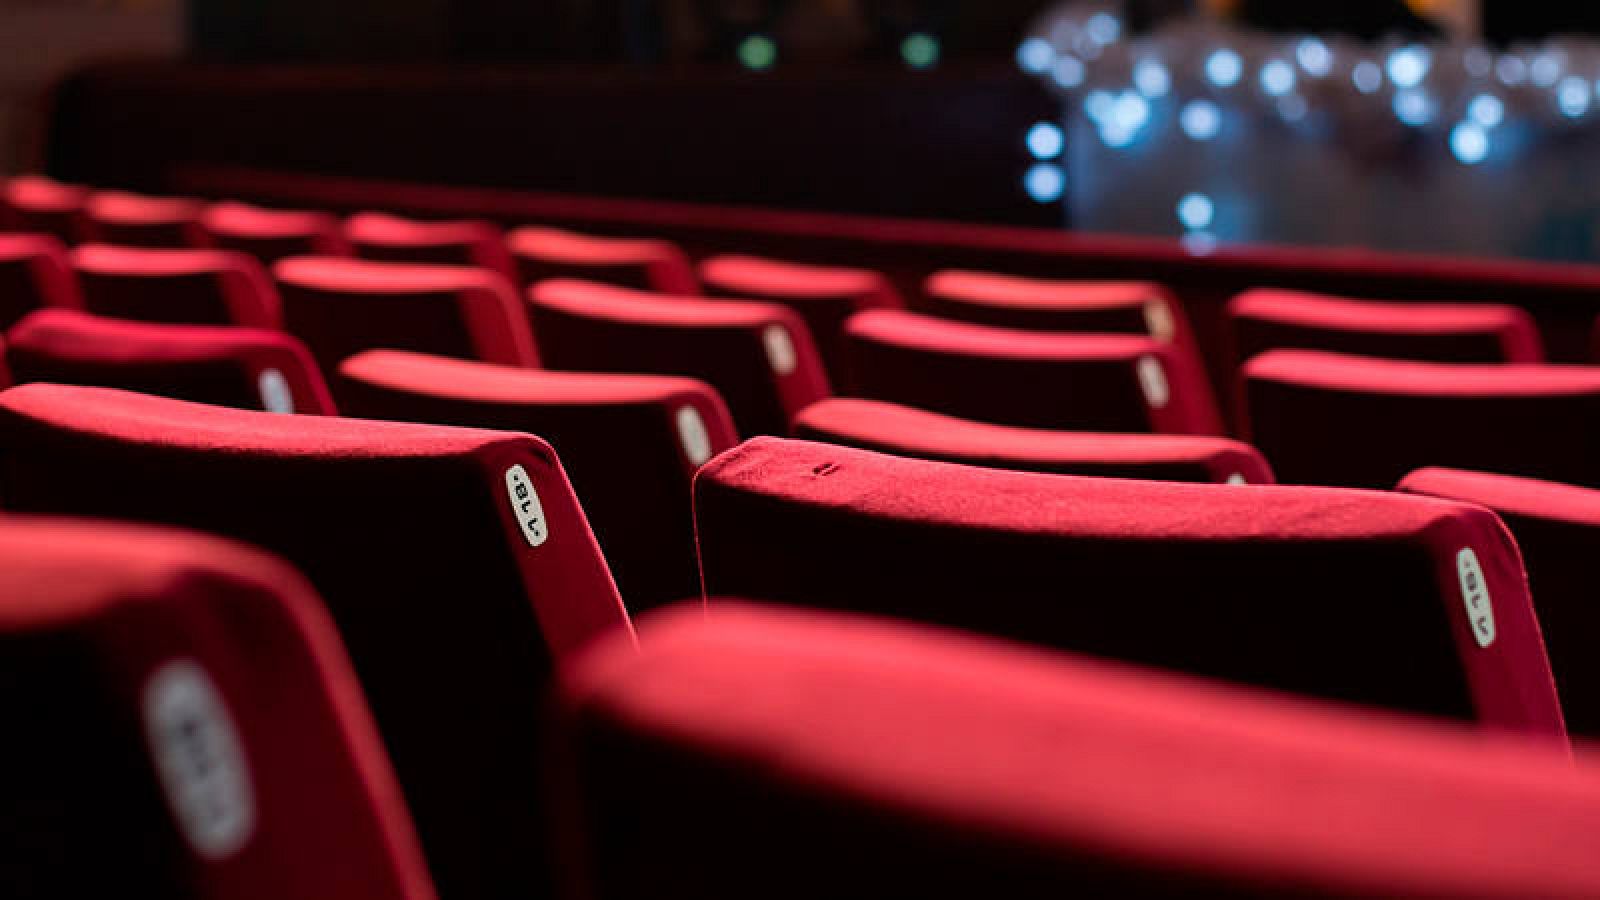  Las salas de cine seguirán abiertas al público con un aforo limitado de un tercio del total.